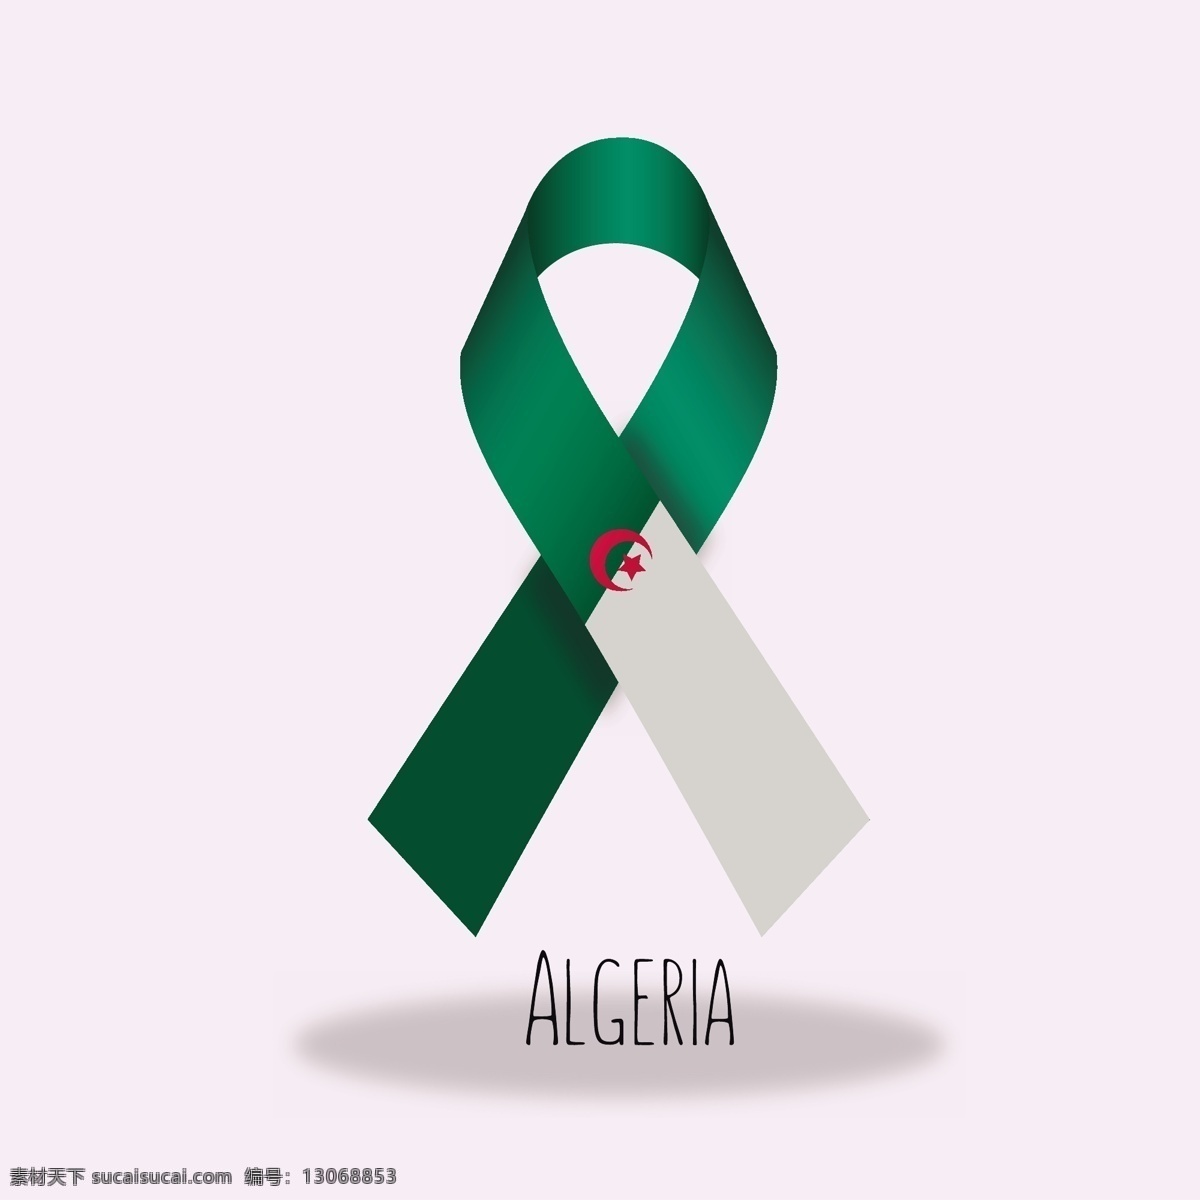 阿尔及利亚 国旗 丝带 设计素材 丝带设计素材 丝带设计 绿色丝带 丝绸带子 飘带 交叉丝带 丝绸丝带